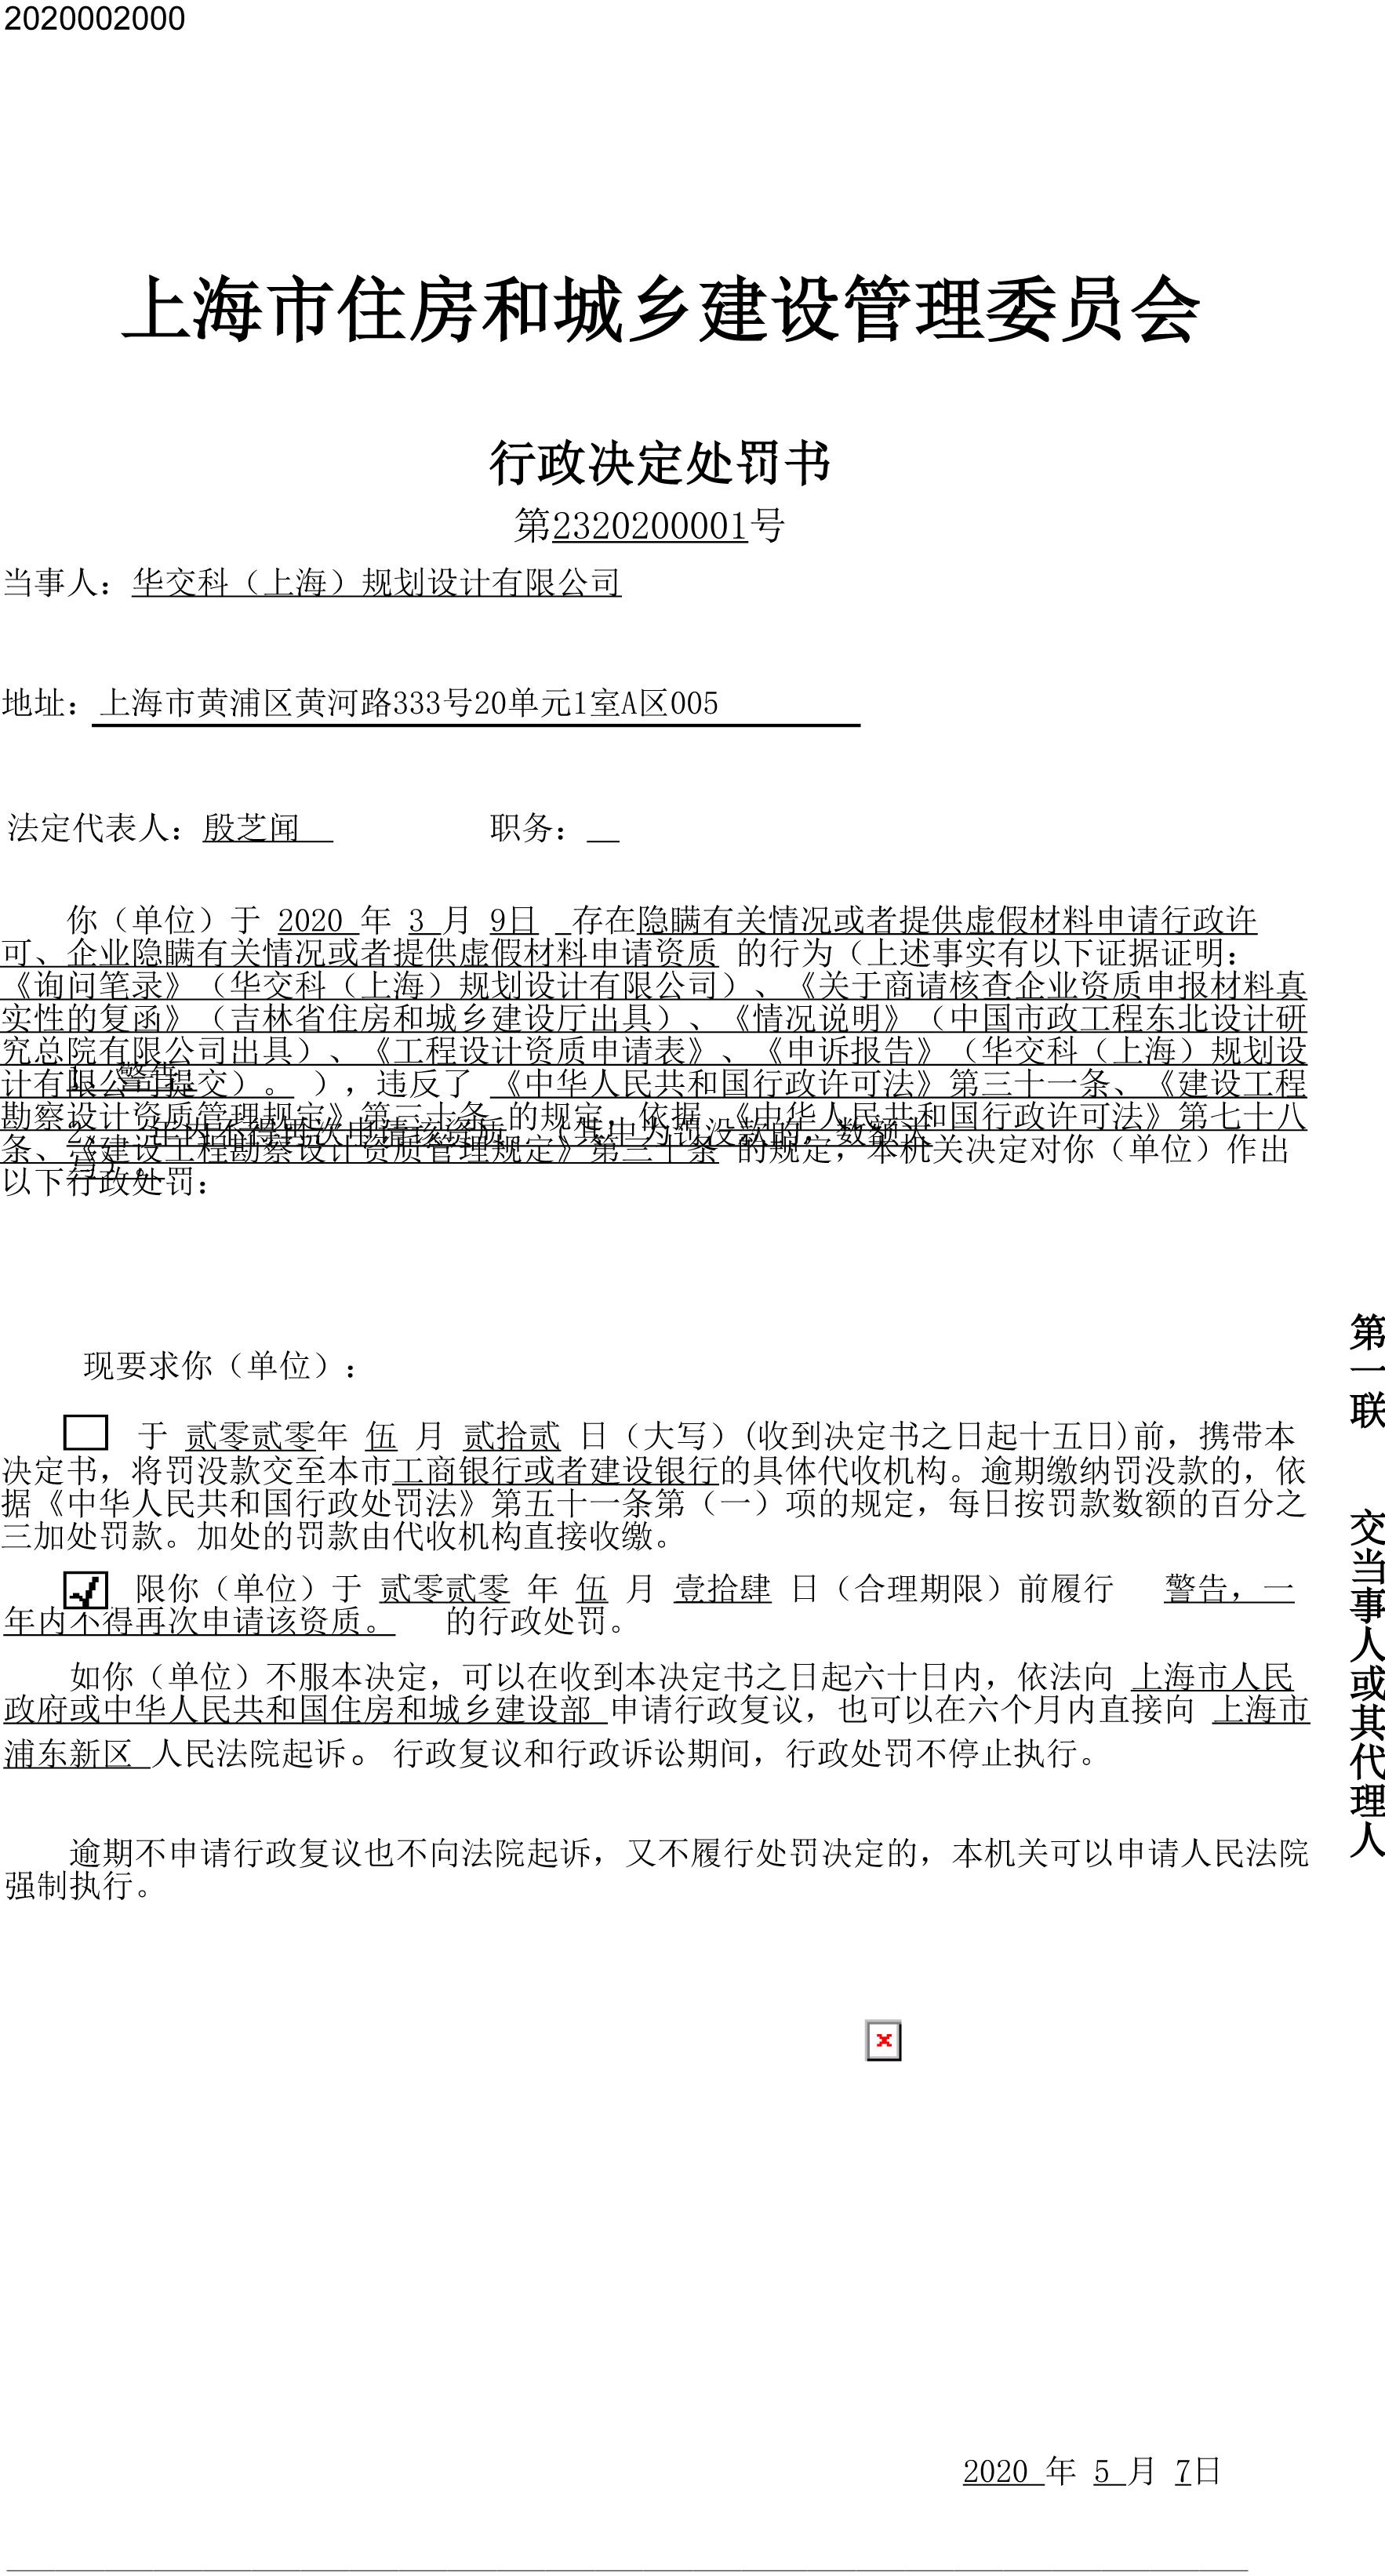 华交科(上海)规划设计有限公司申请资质弄虚作假被罚